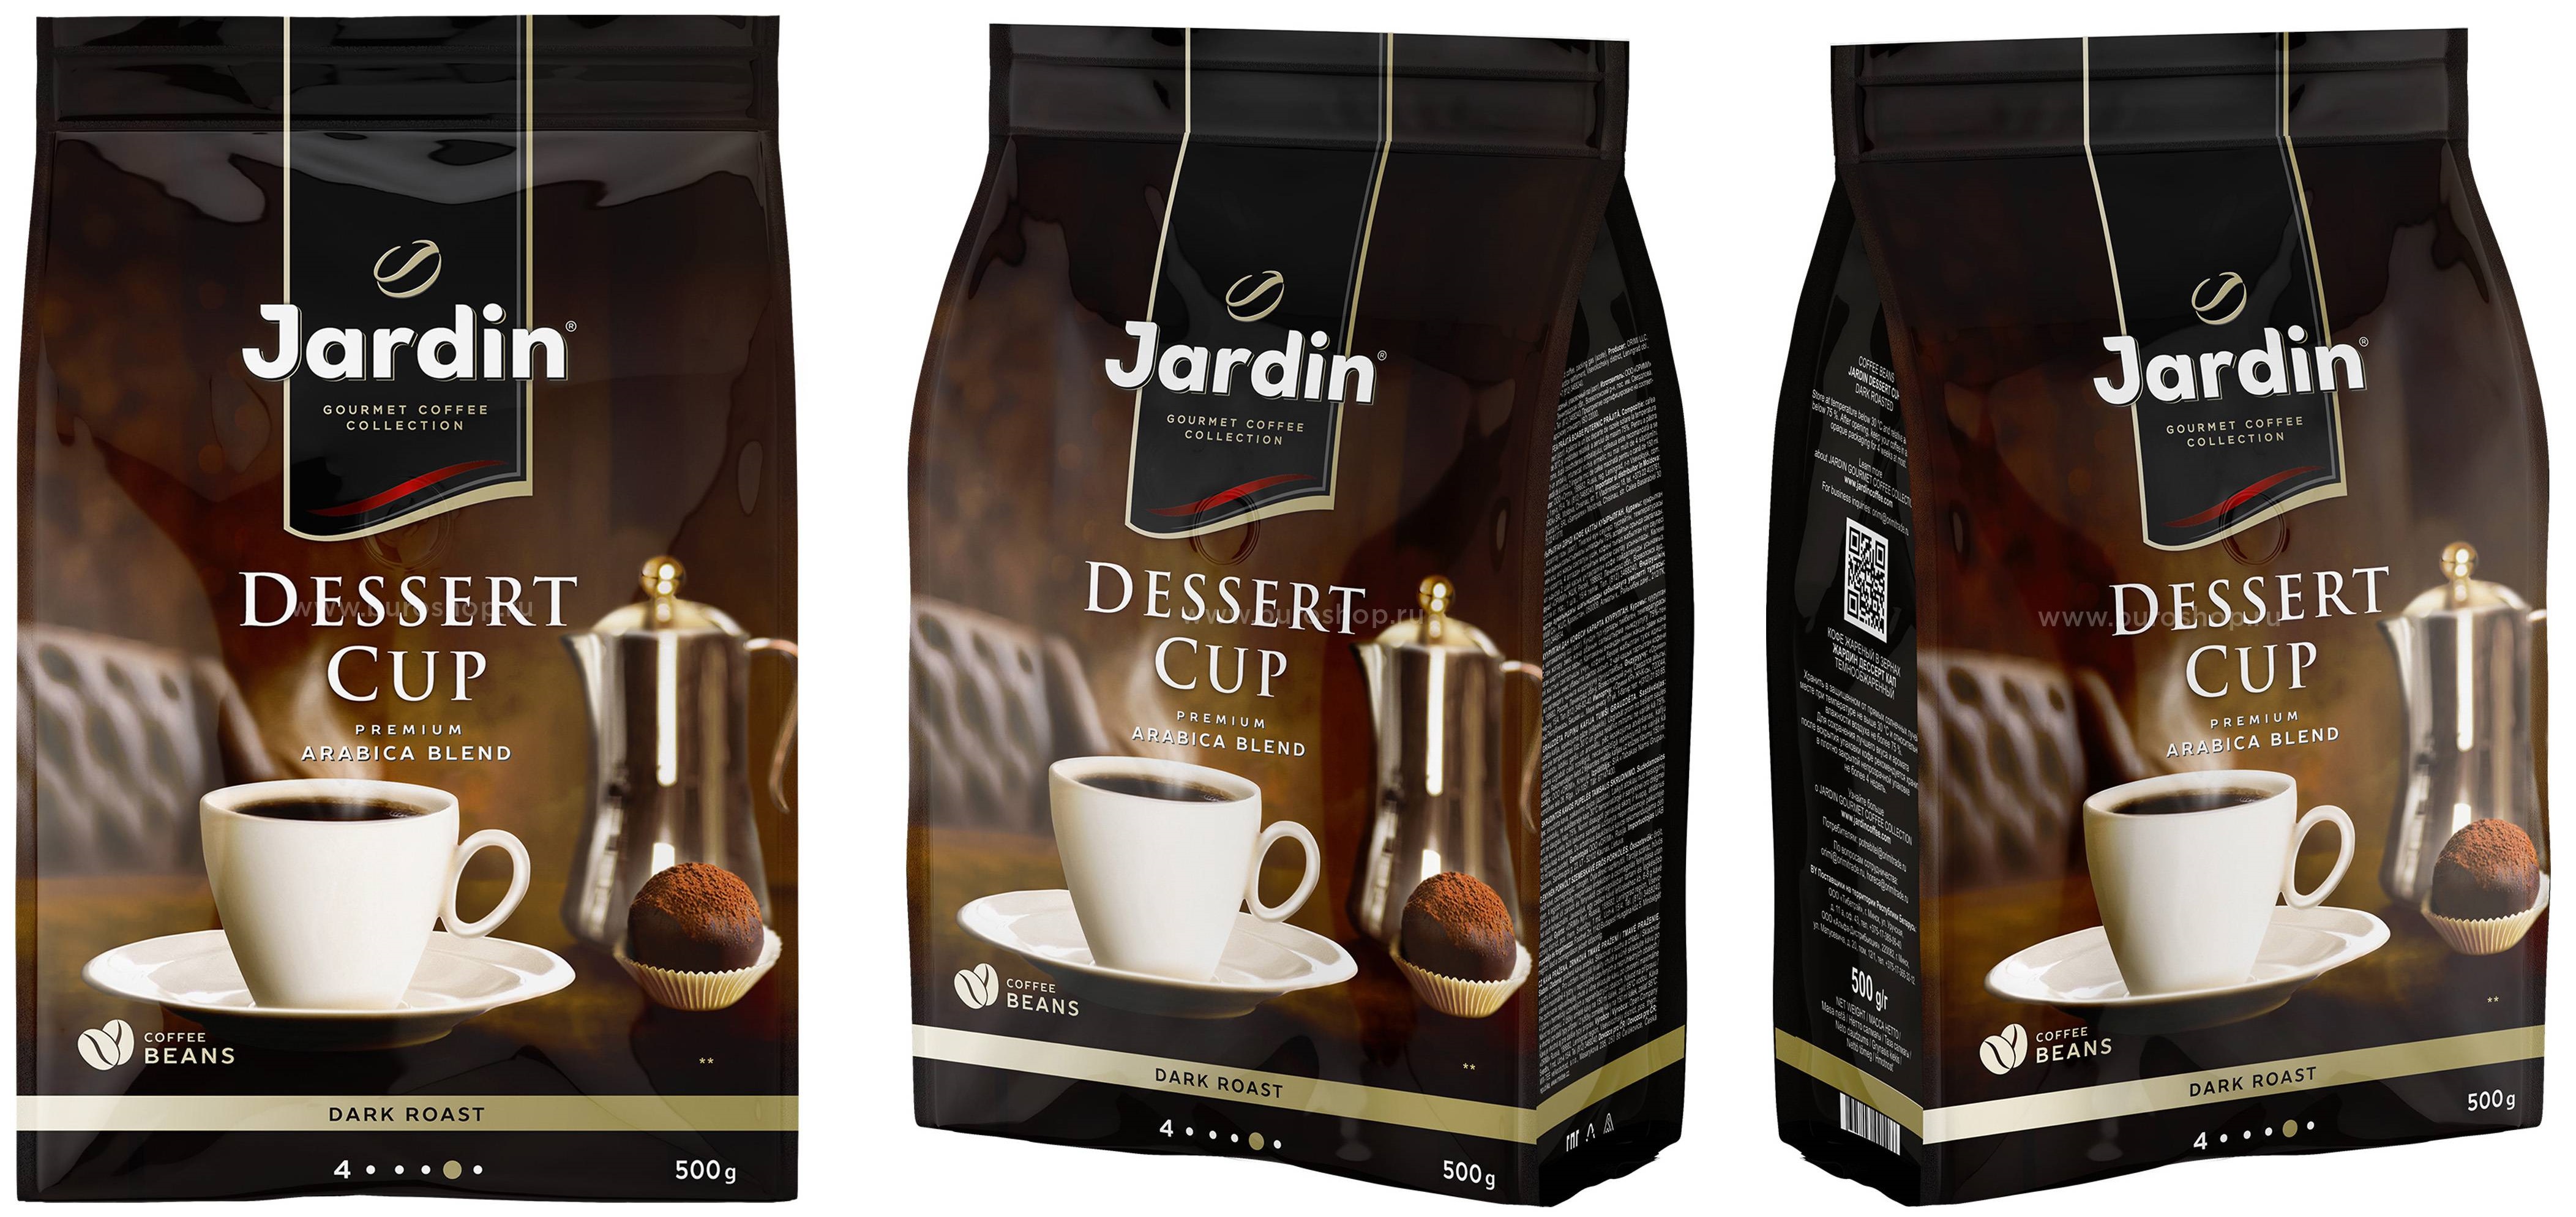 Реклама кофе Жардин. Jardin кофе реклама. Что подходит к кофе. Жардин десерт кап зерно 1 кг. Какой кофе лучше в россии